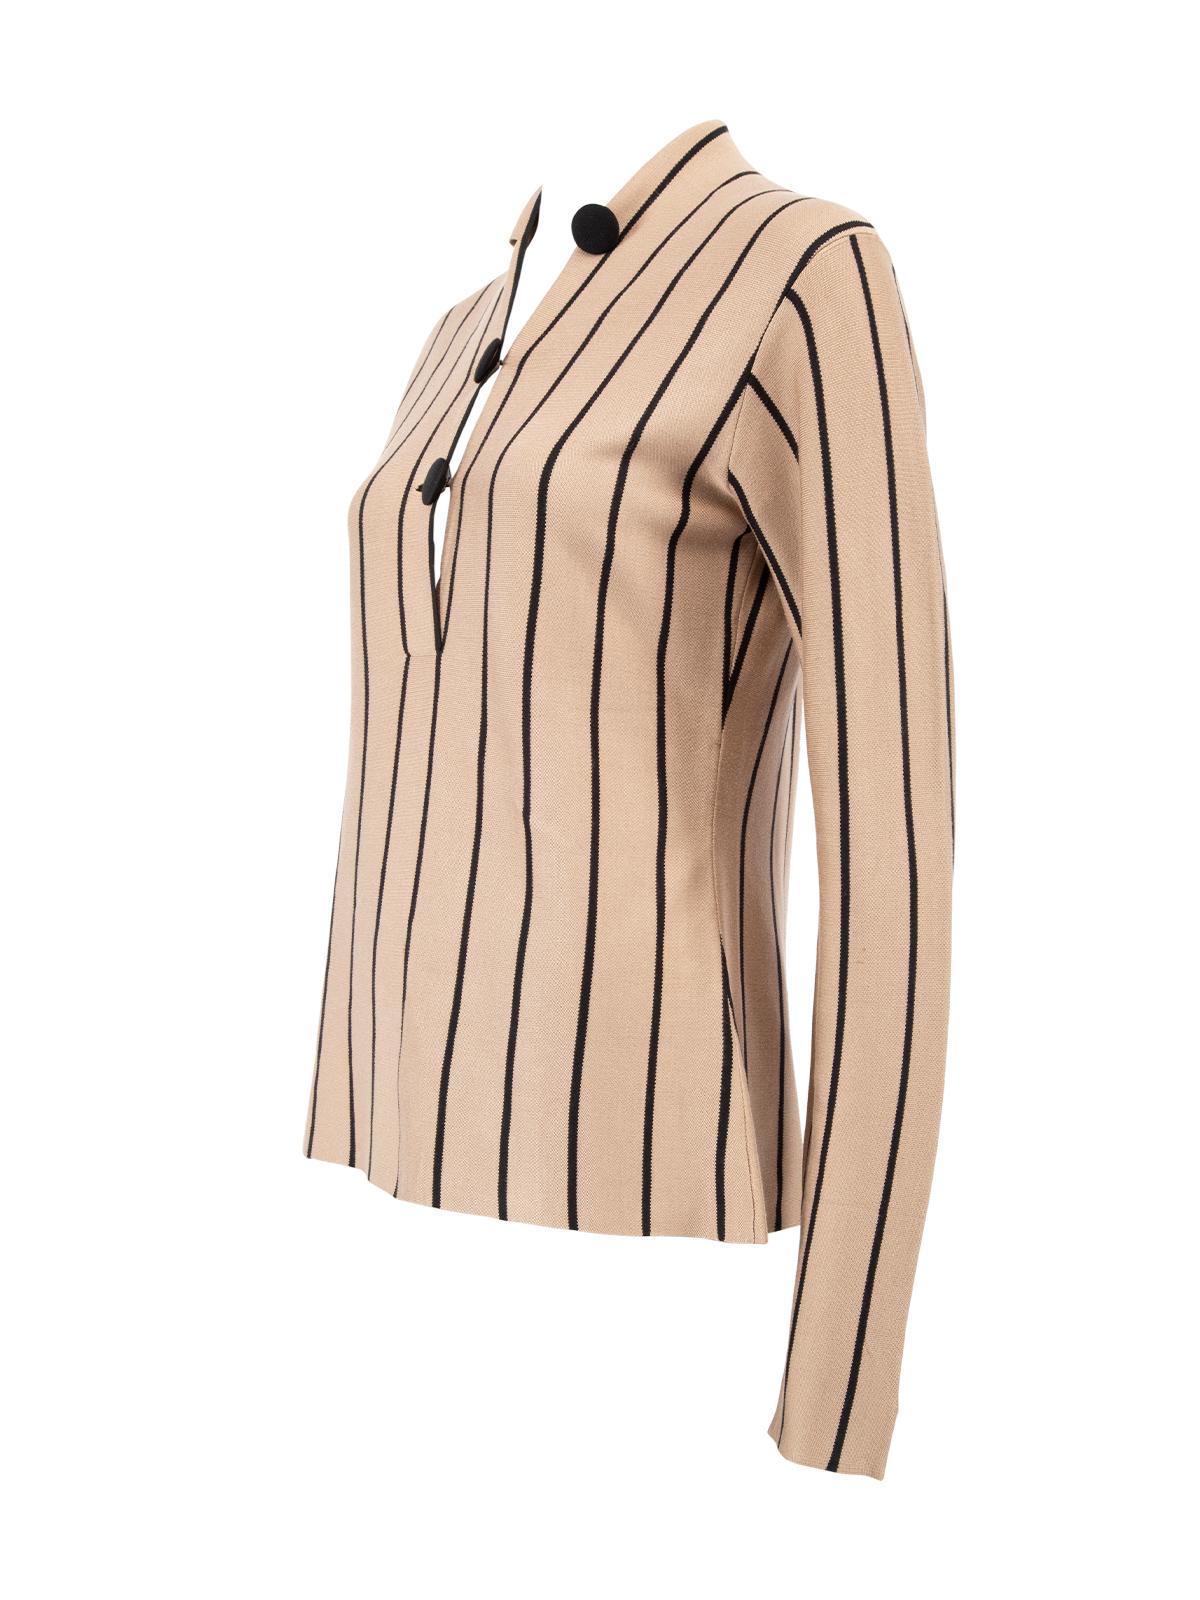 Pre-Loved Balenciaga Women's Brown Striped V Neck Top 1